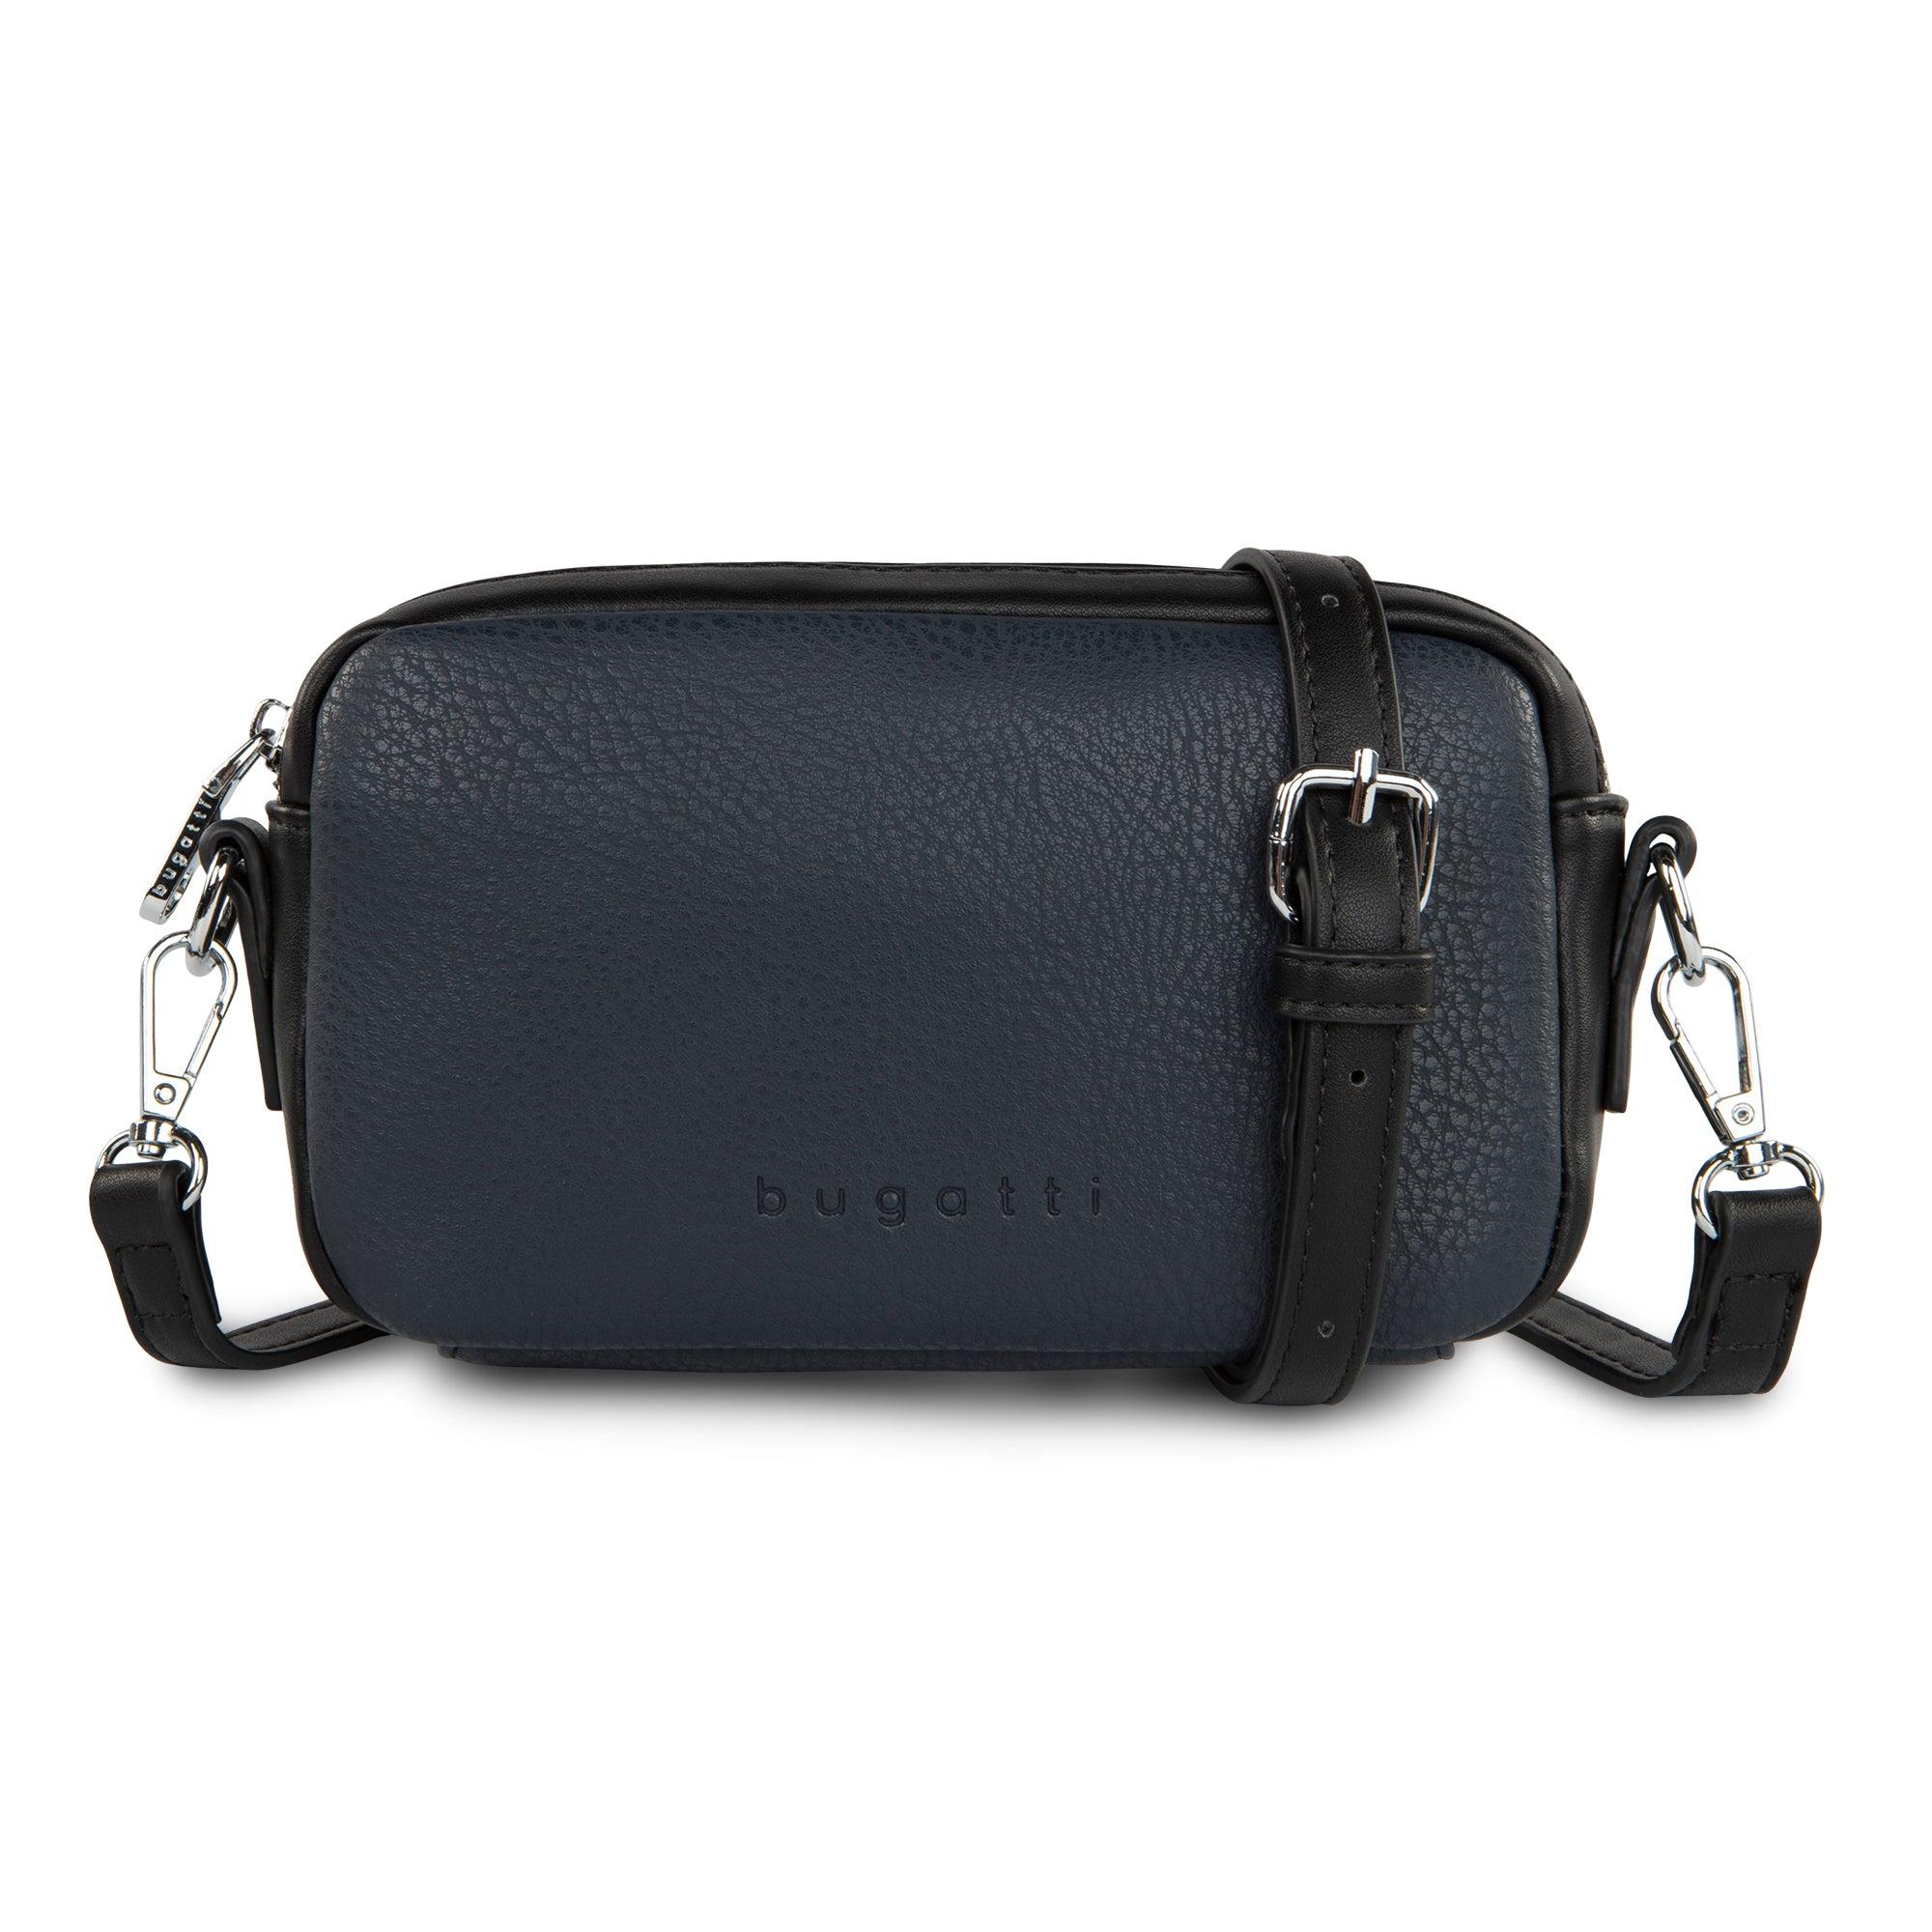 Bugatti Brera Collection - Mobile Bag With Adjustable Strap